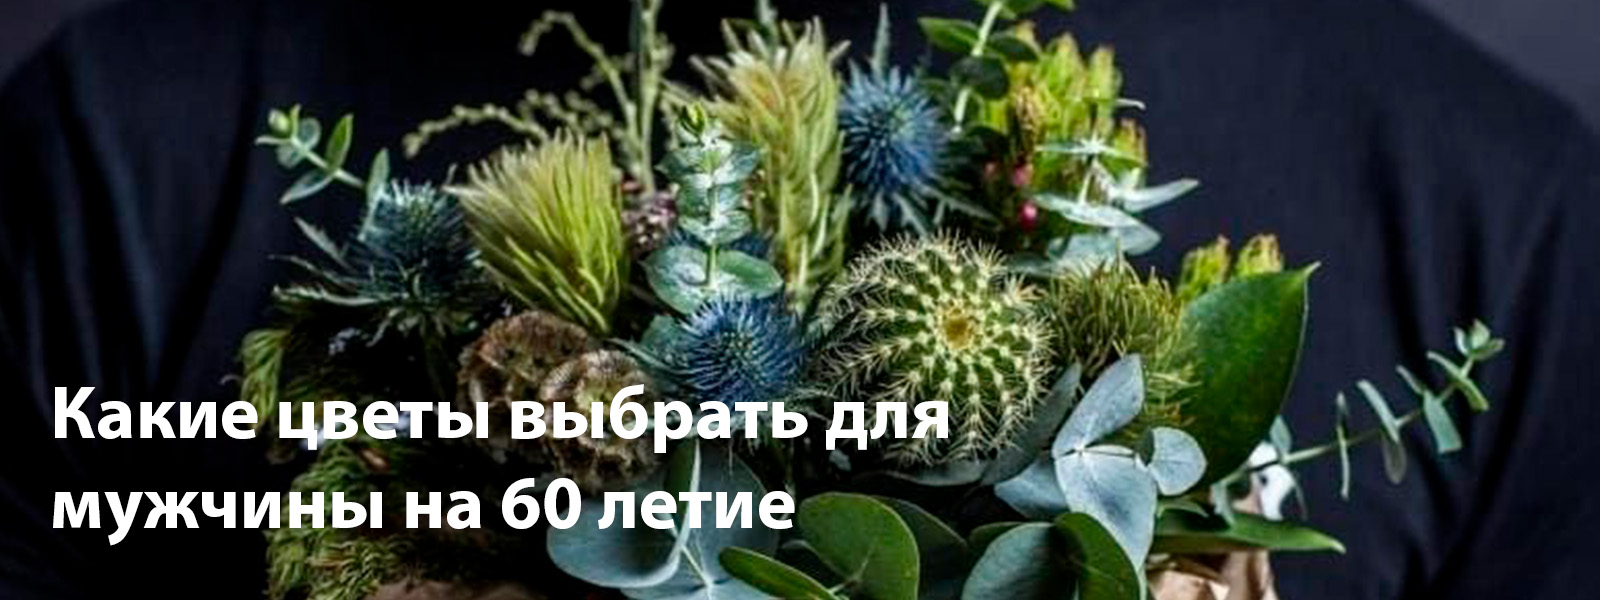 Какие цветы выбрать для мужчины на 60 лет